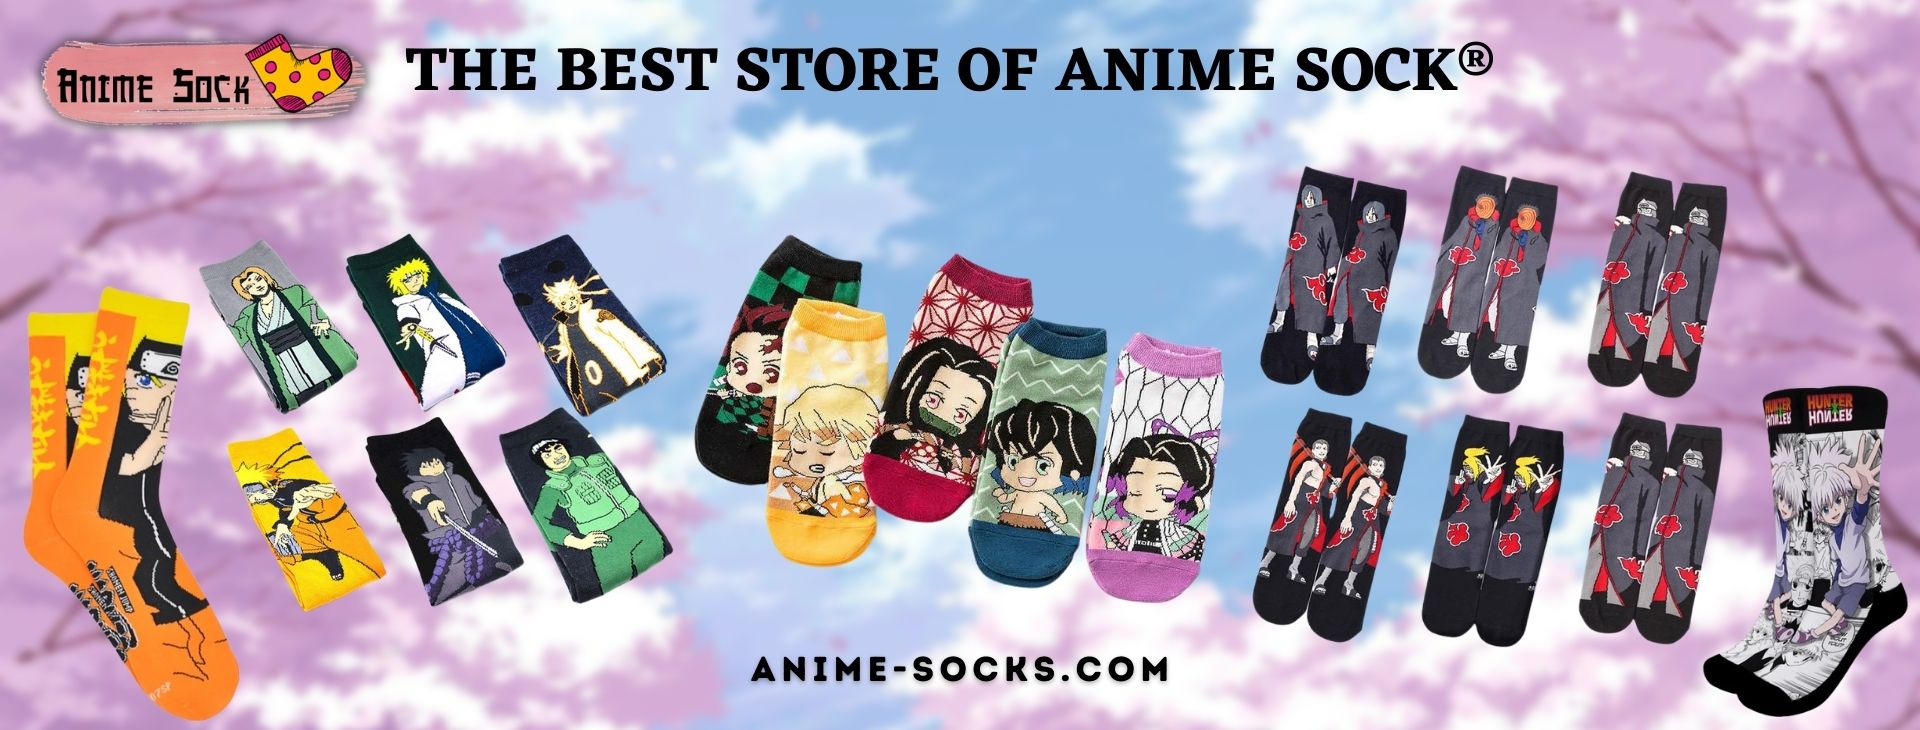 Anime Sock Banner 1920x730px 1 - Anime Socks